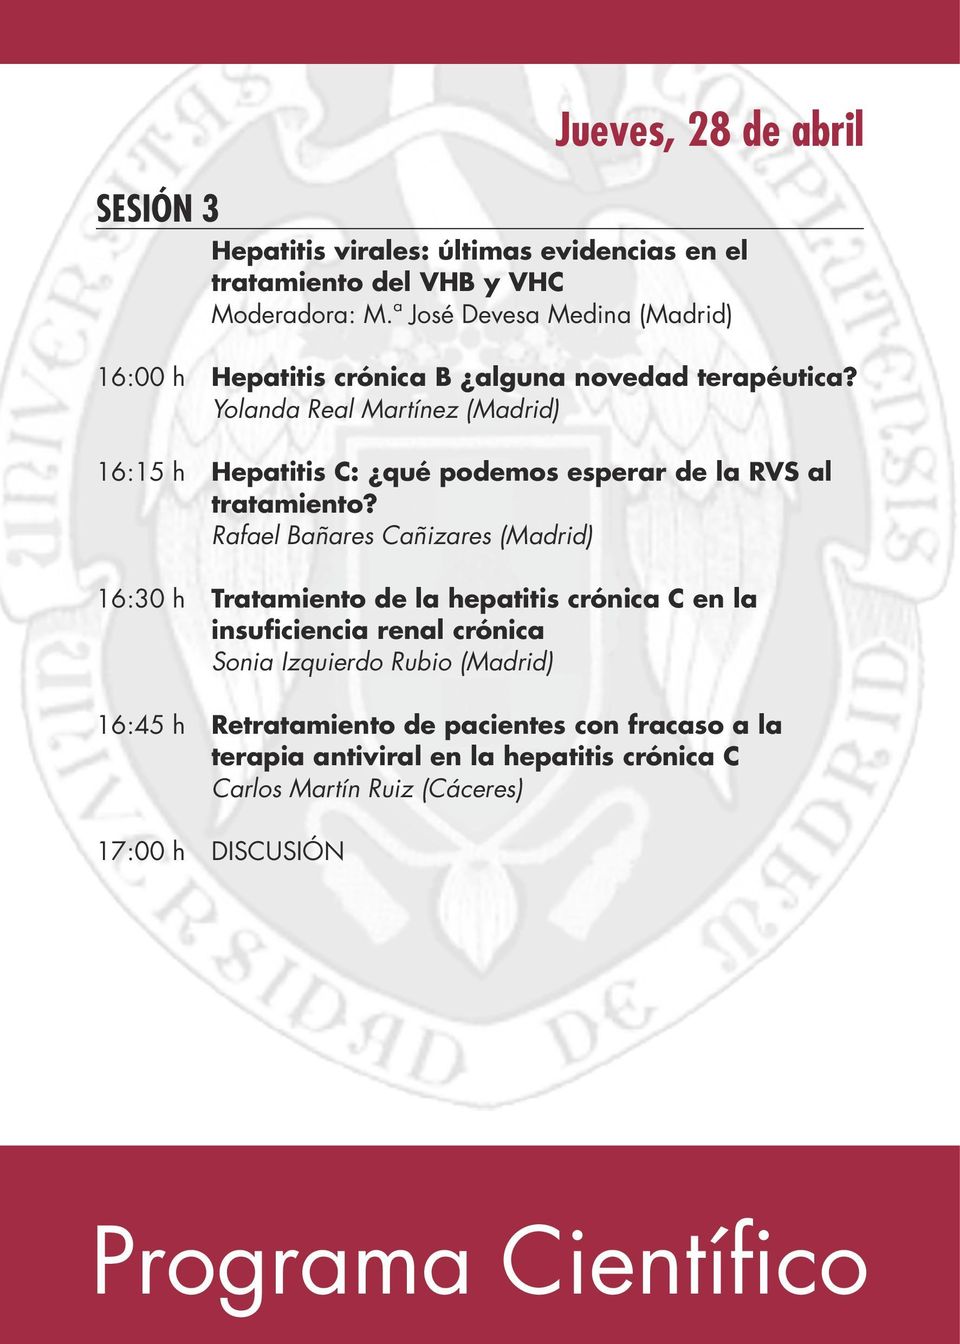 Yolanda Real Martínez () 16:15 h Hepatitis C: qué podemos esperar de la RVS al tratamiento?